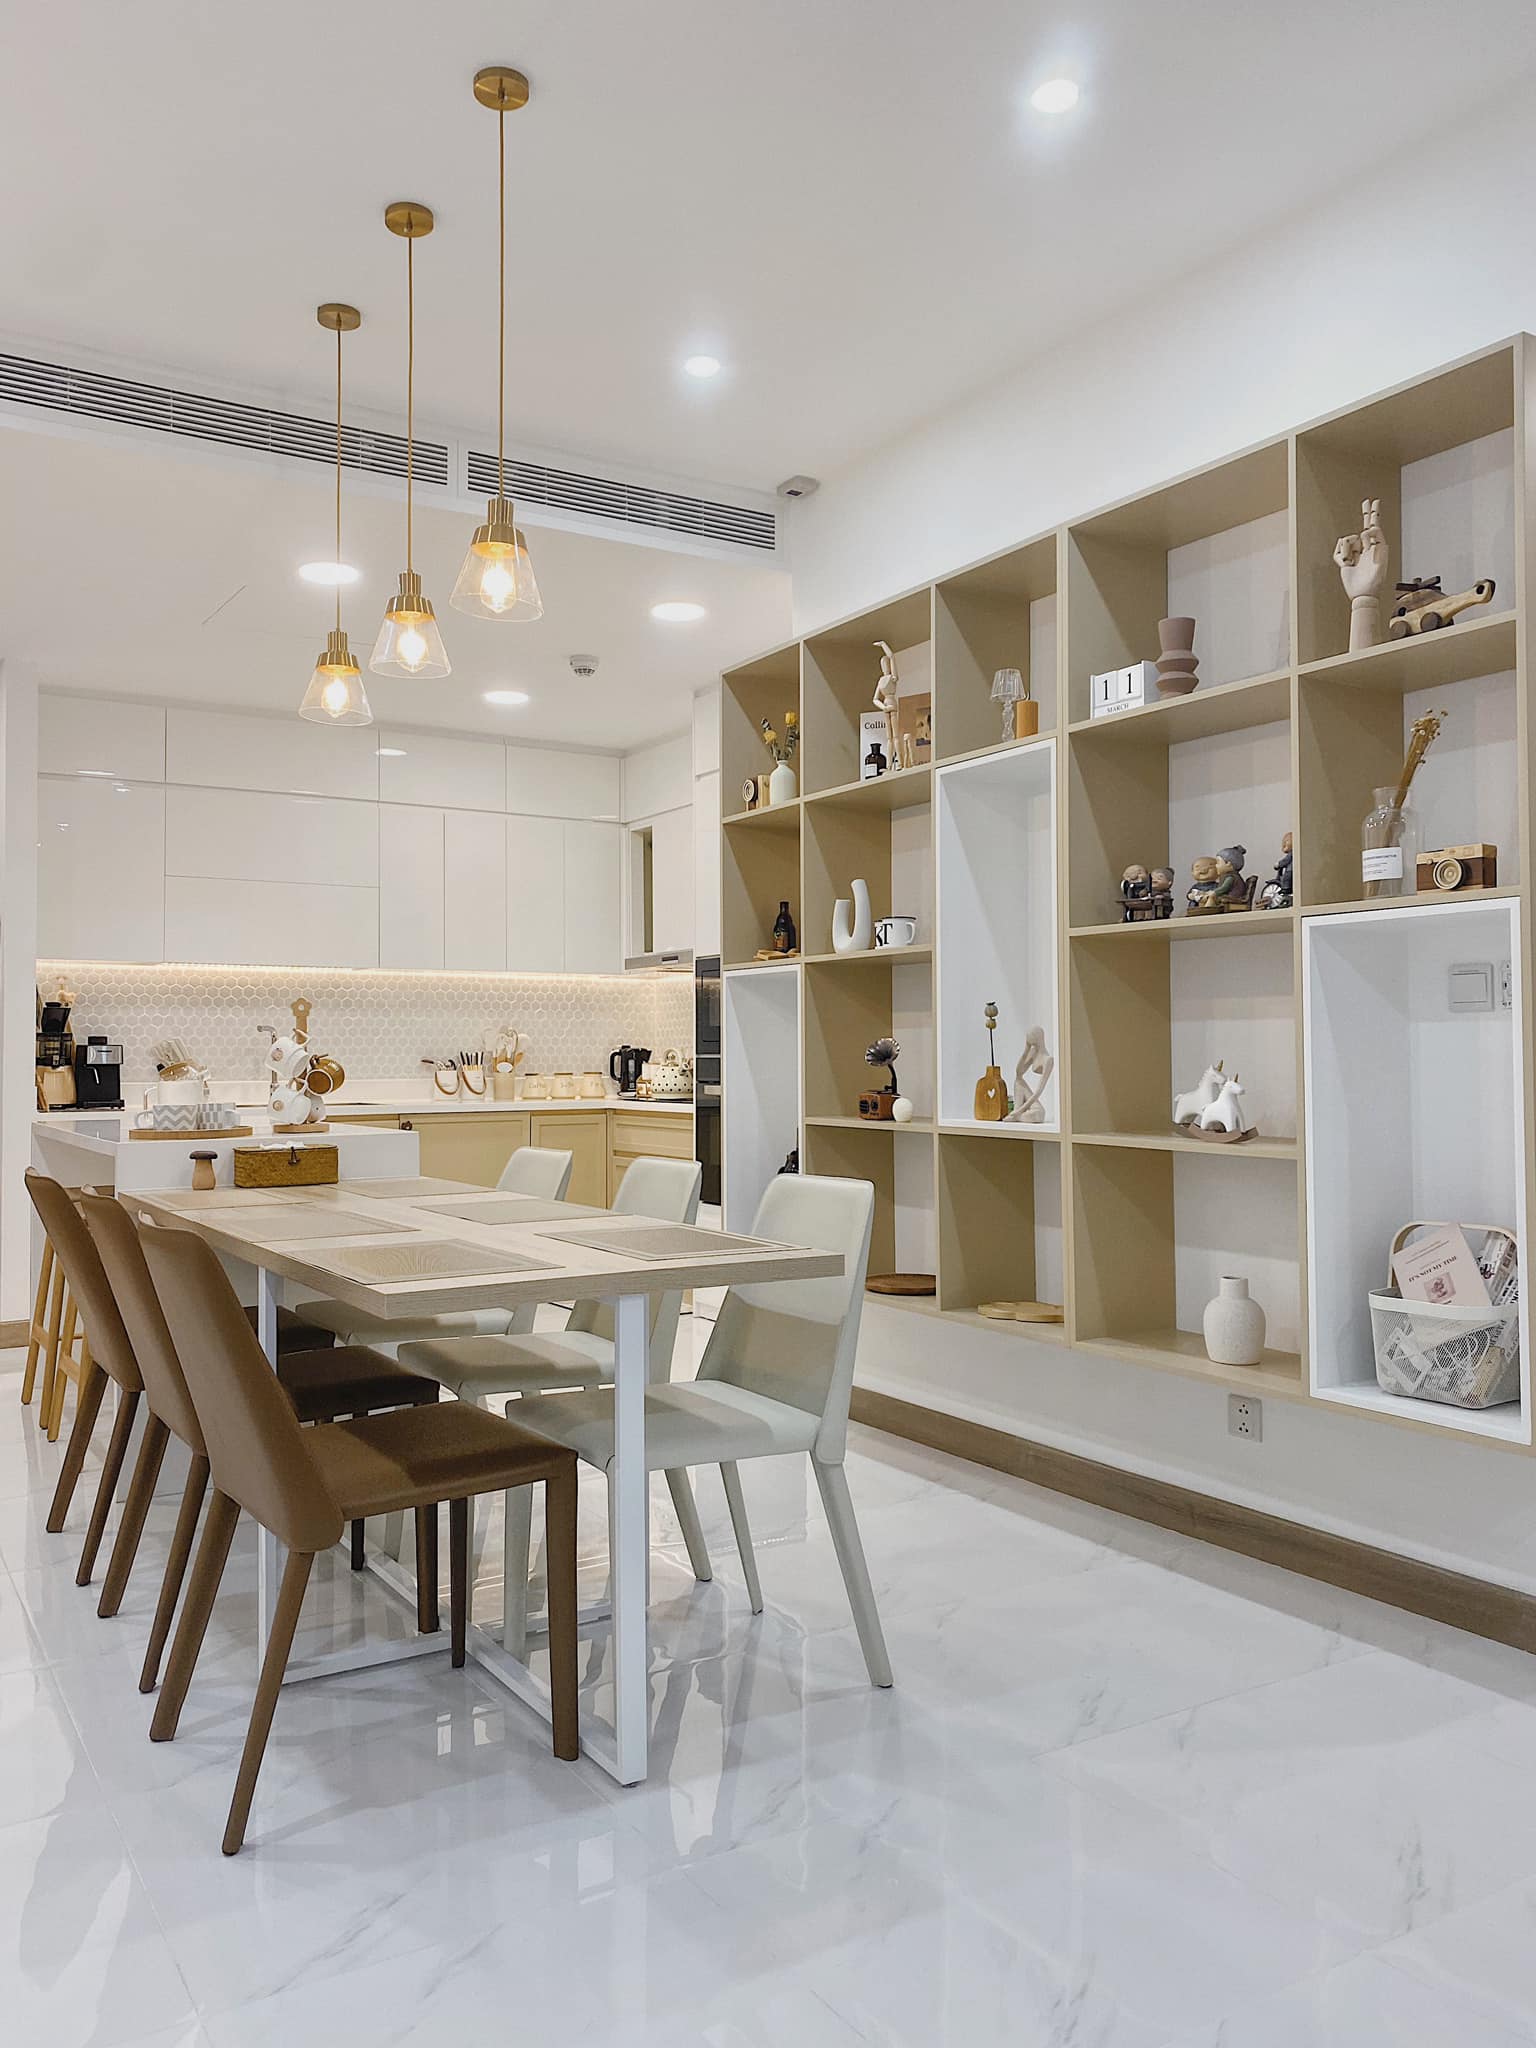 Thiết kế phòng bếp theo phong cách tối giản hiện đại